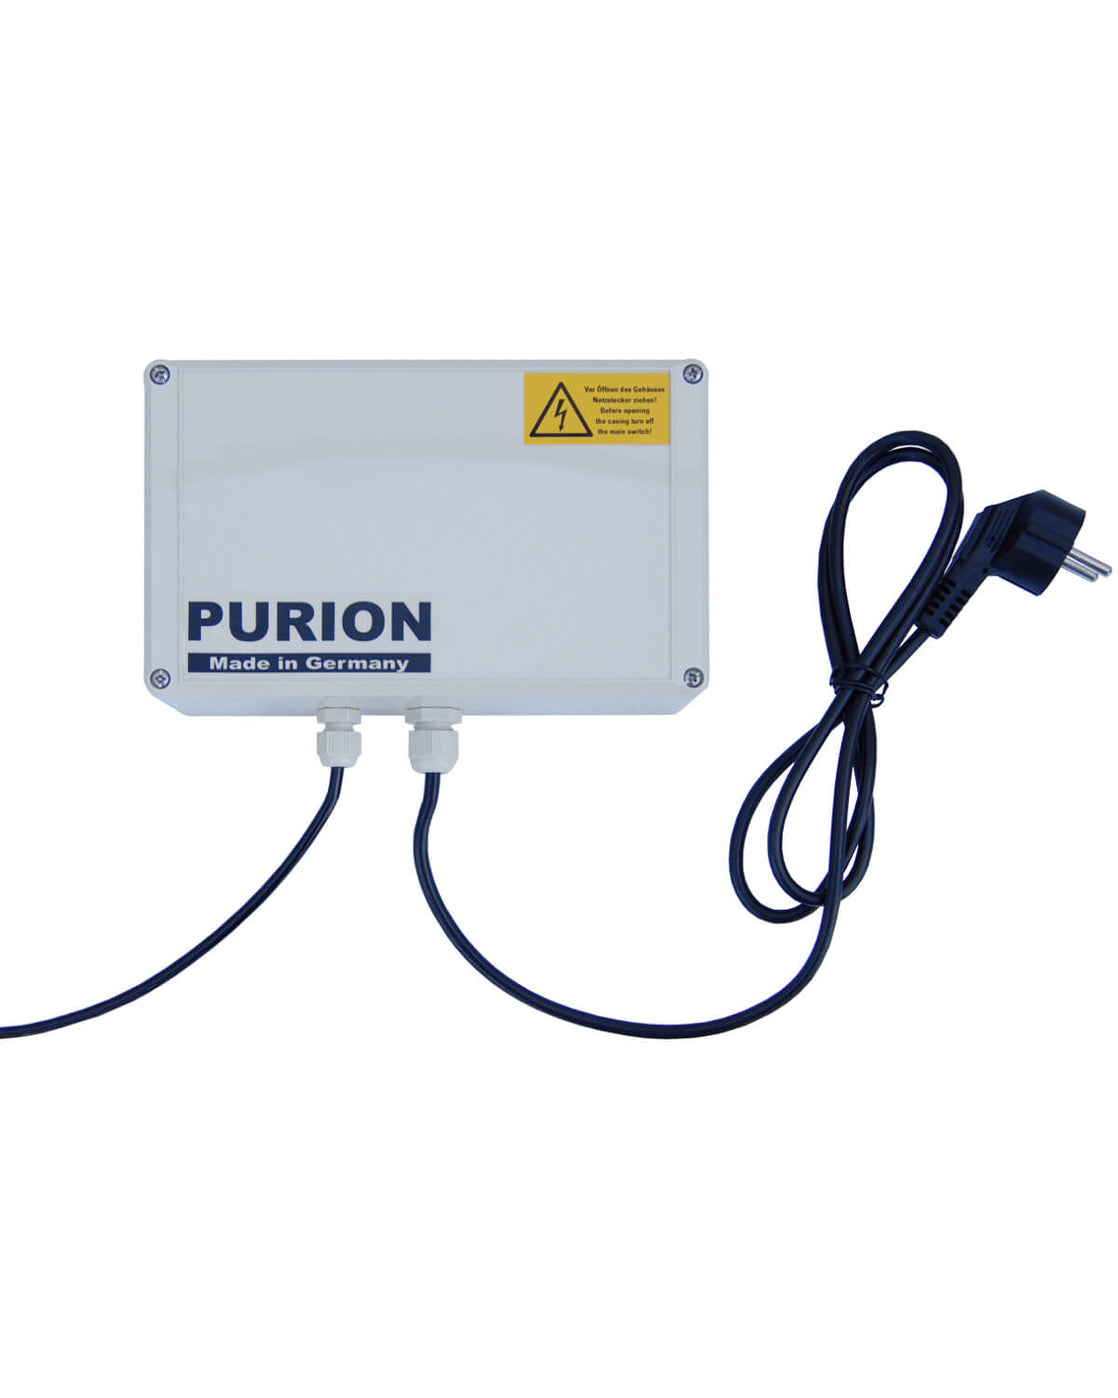 PURION 500 PRO Basic, hergestellt von der PURION GmbH, ist eine Desinfektionsflüssigkeit, die speziell für die effektive Reinigung und Reinigung von Oberflächen entwickelt wurde. Mit seinen leistungsstarken Eigenschaften sorgt PURION 500 PRO Basic für eine optimale Desinfektion und liefert außergewöhnliche Ergebnisse.